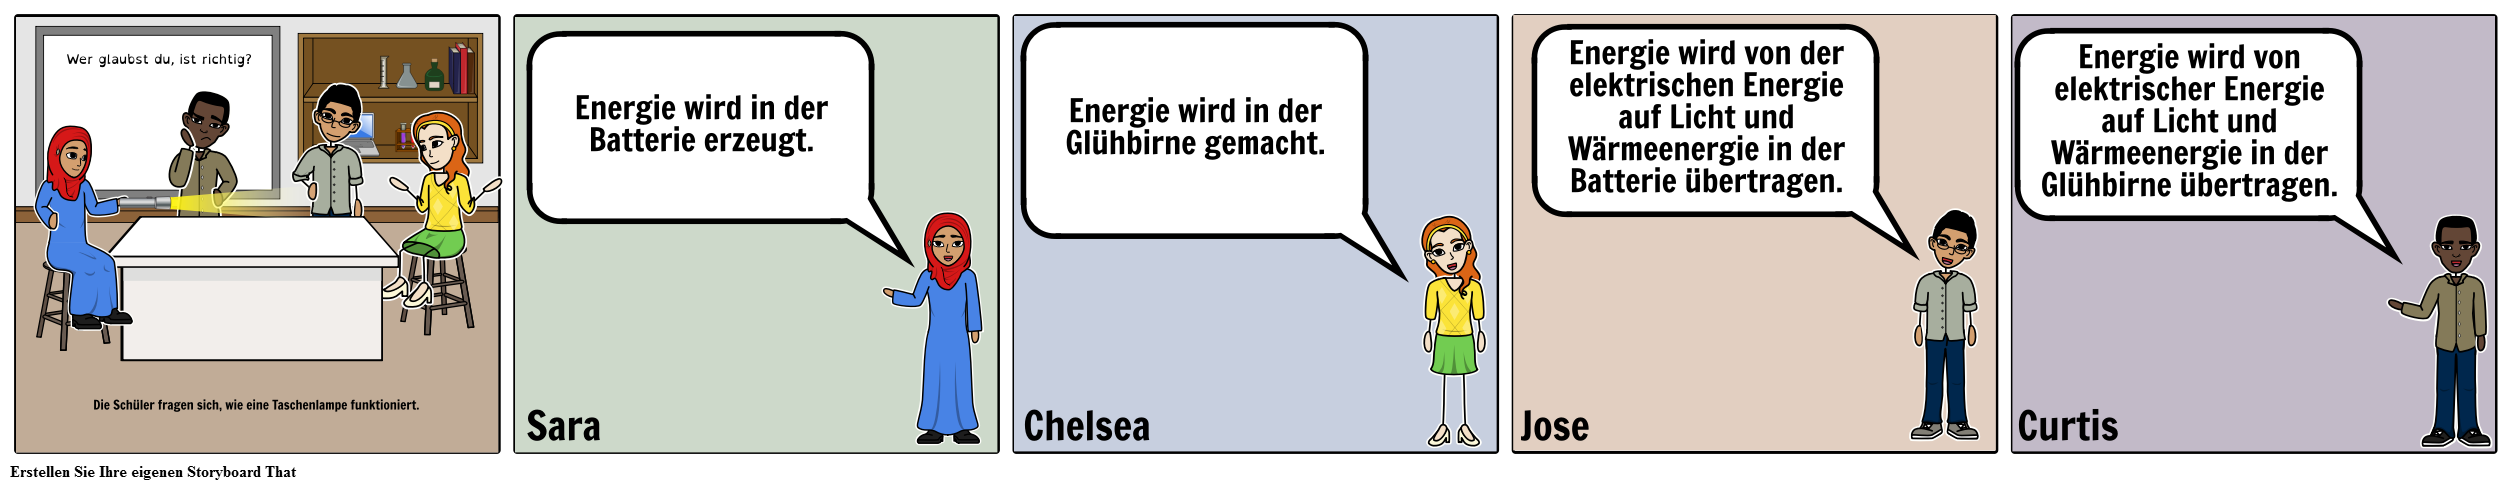 Diskussion Storyboard - ES - Energie